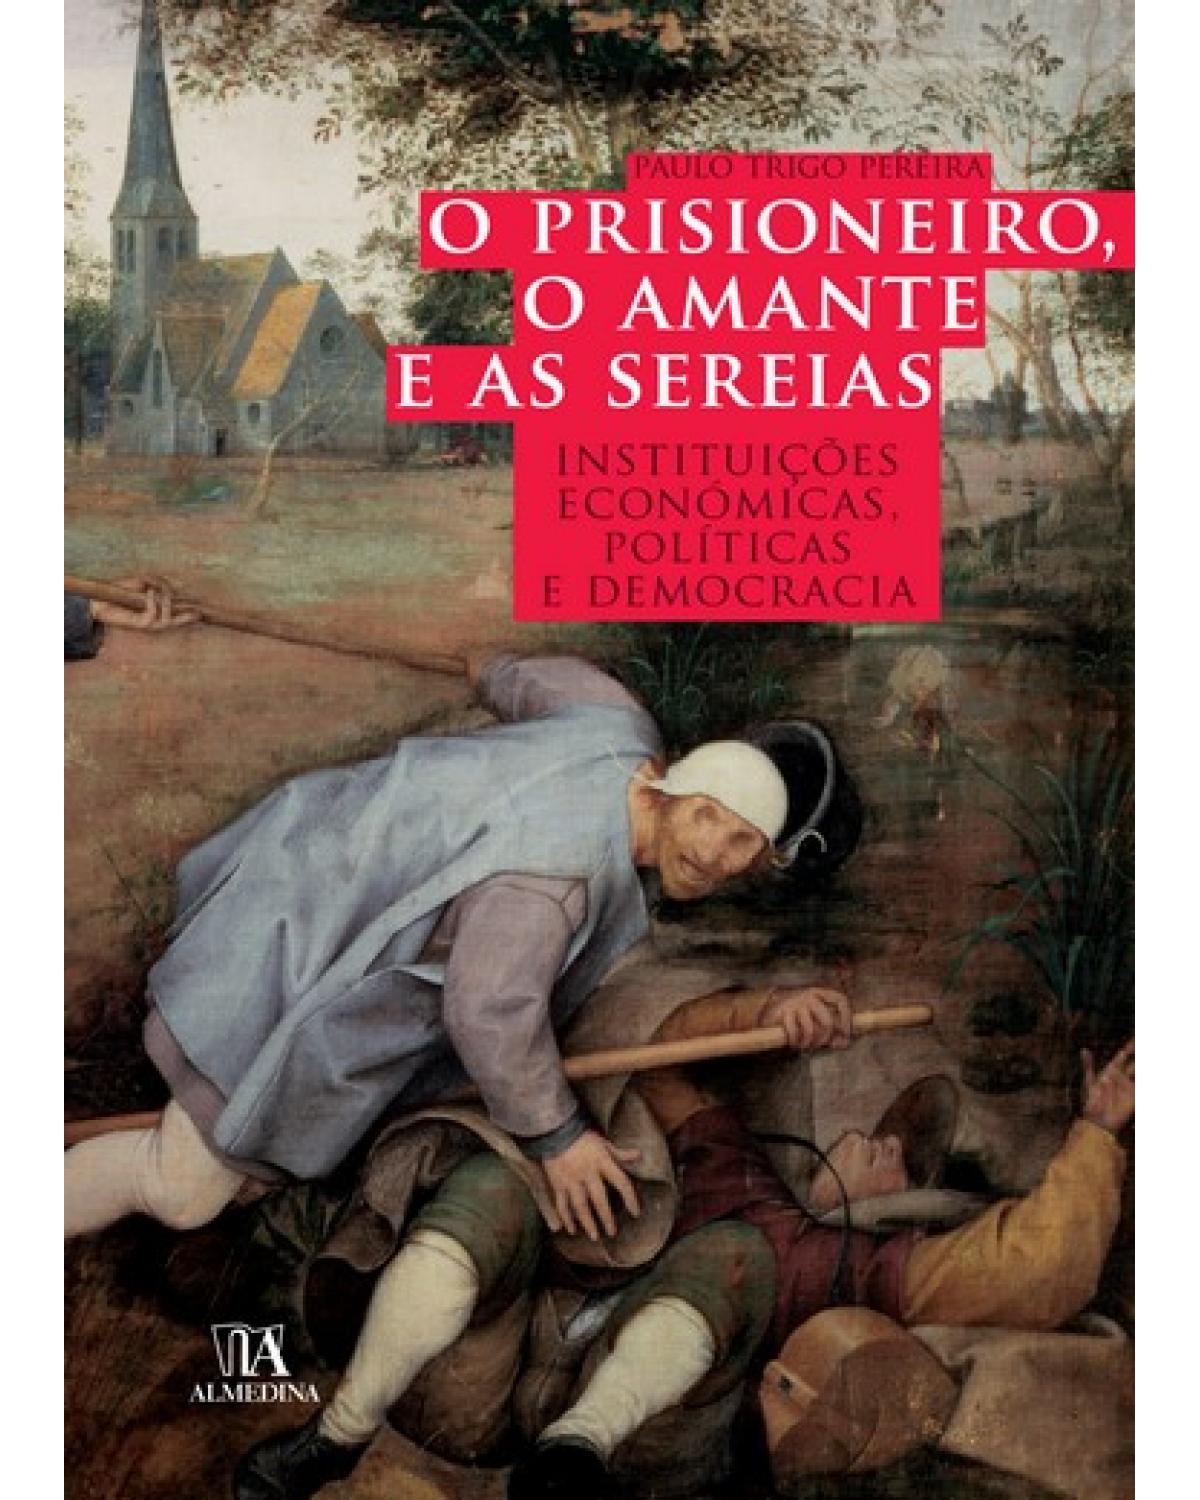 O prisioneiro, o amante e as sereias - instituições económicas, políticas e democracia - 1ª Edição | 2008